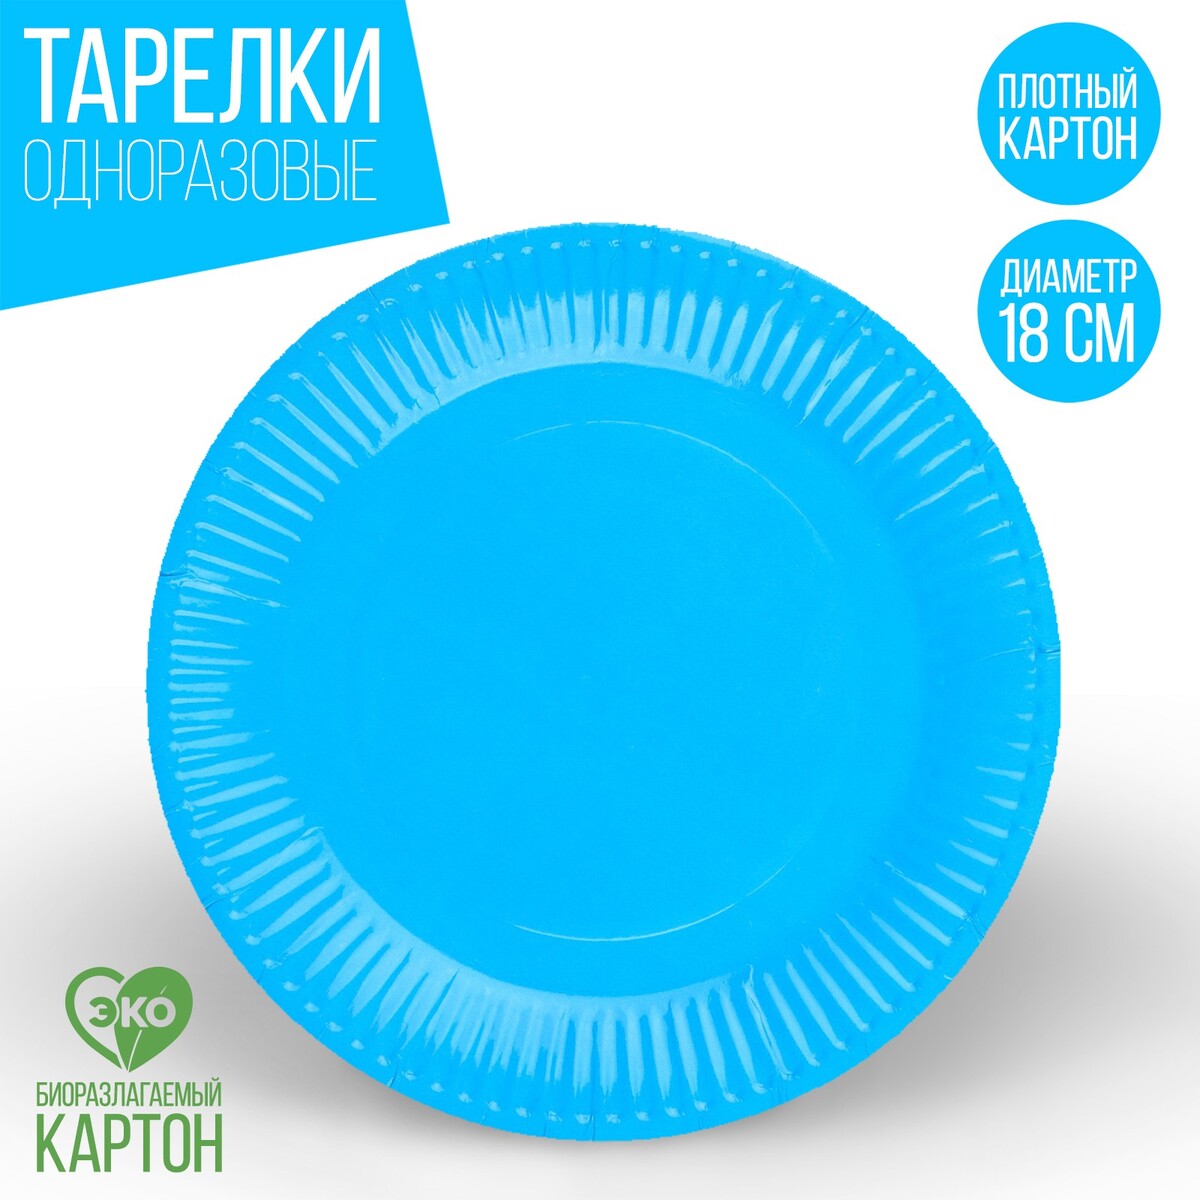 Тарелка одноразовая бумажная однотонная, голубой цвет 18 см, набор 10 штук